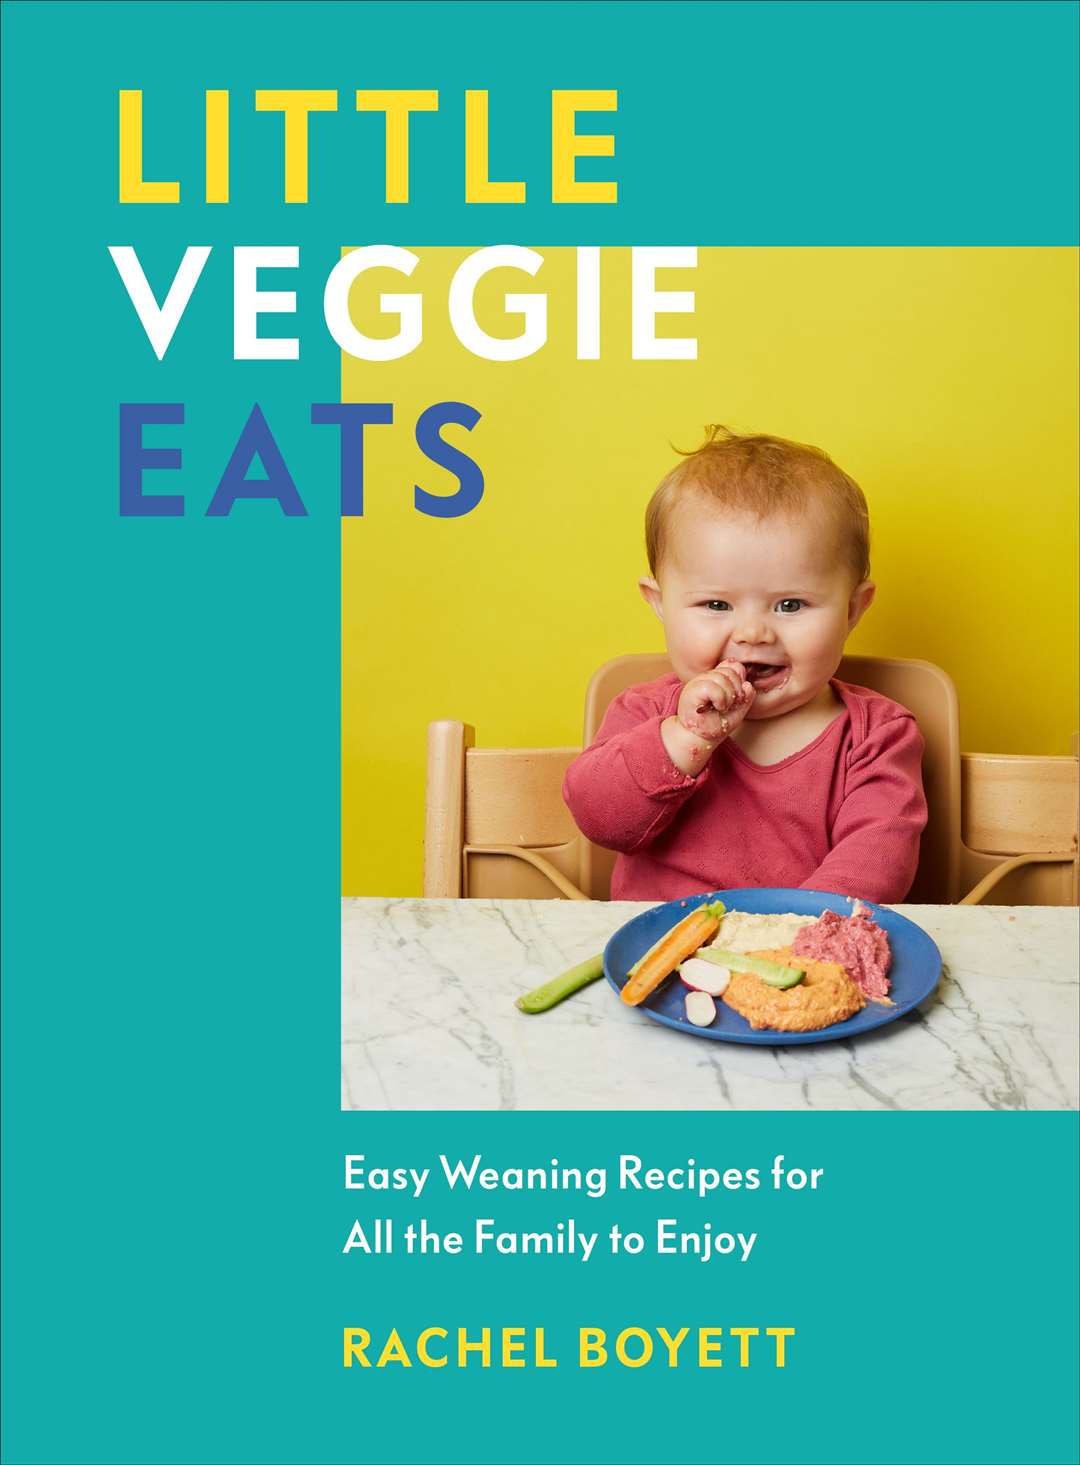 Little Veggie Eats by Rachel Boyett.